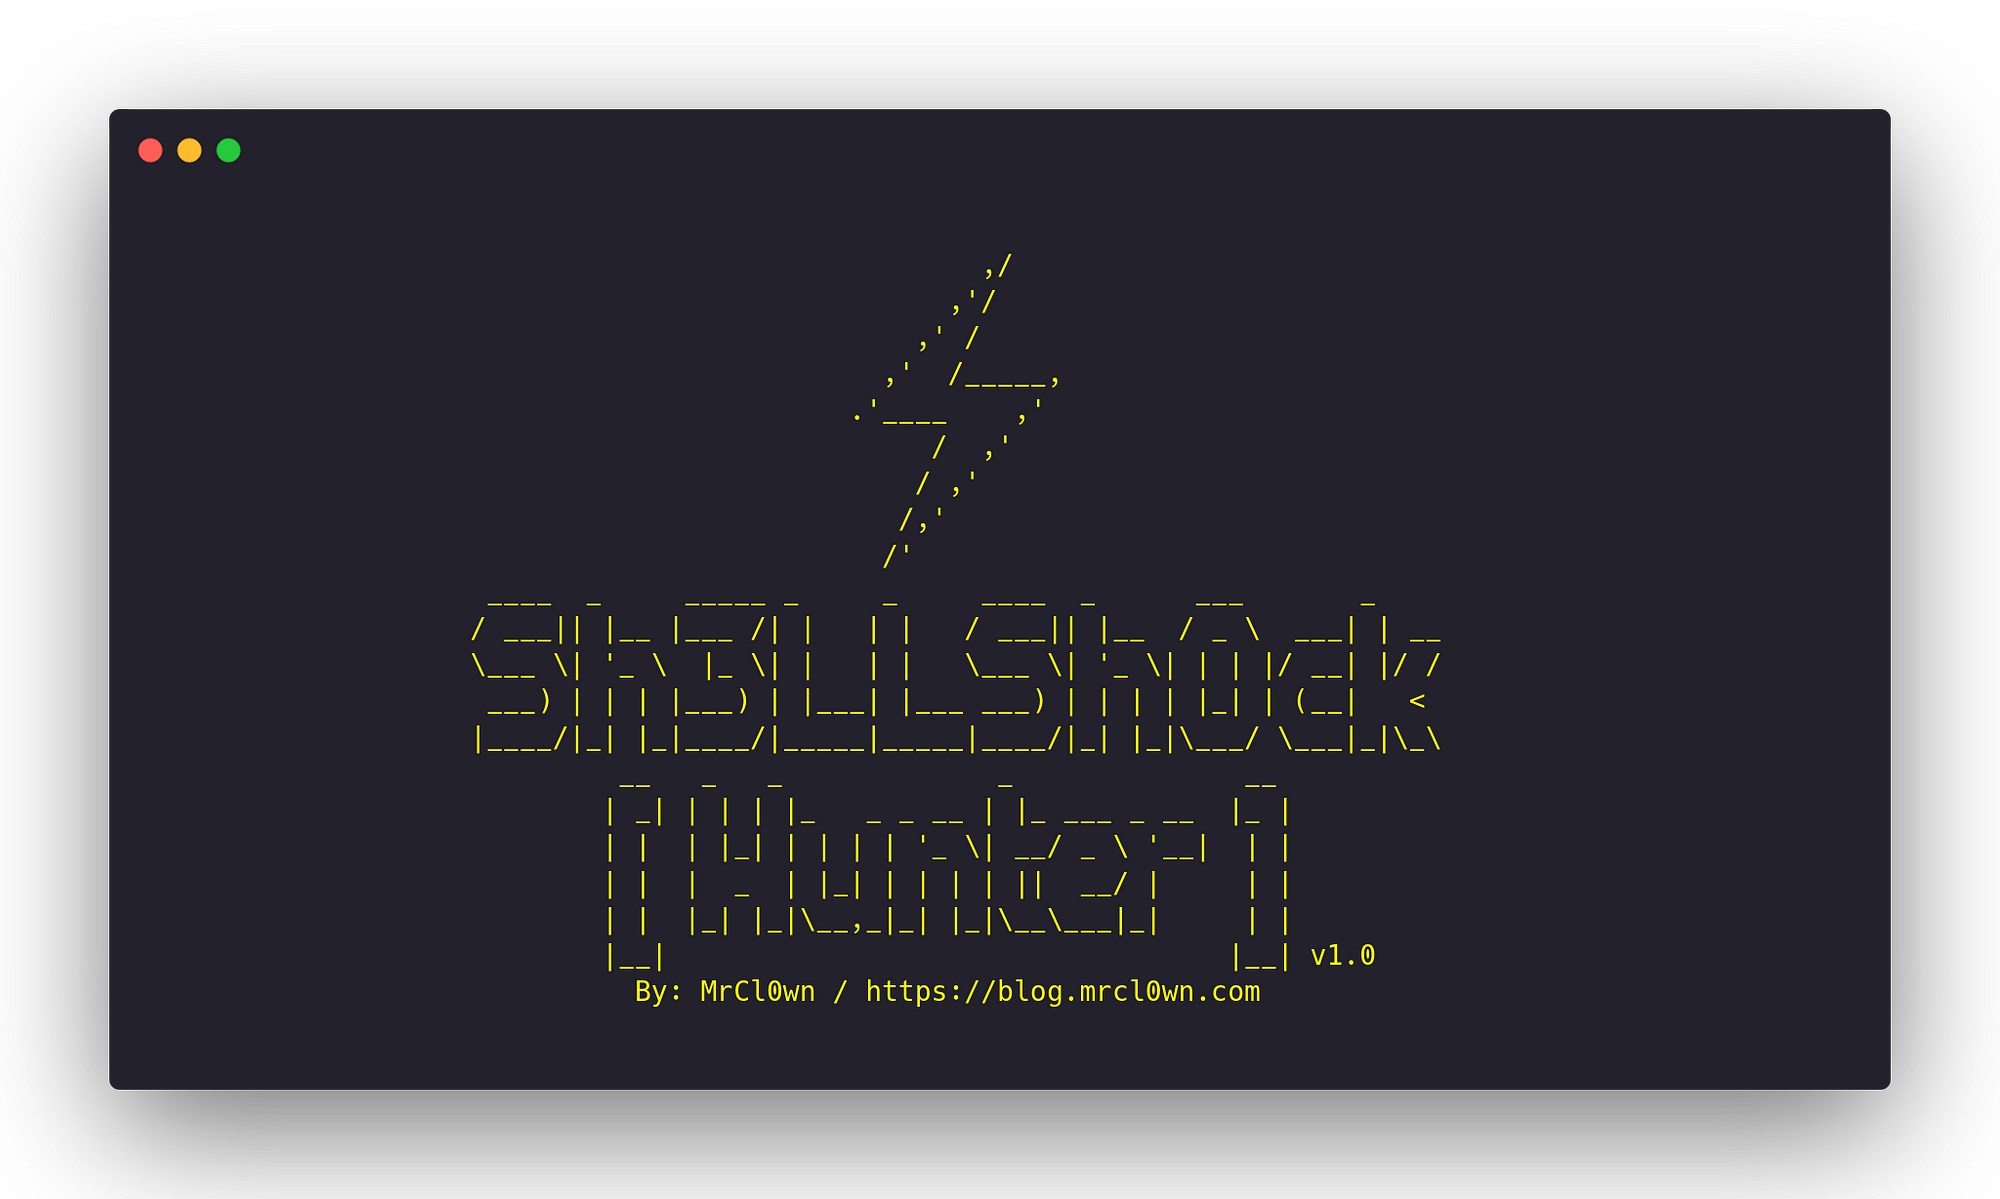 GitHub - gry/shellshock-scanner: A simple Shellshock scanner in python